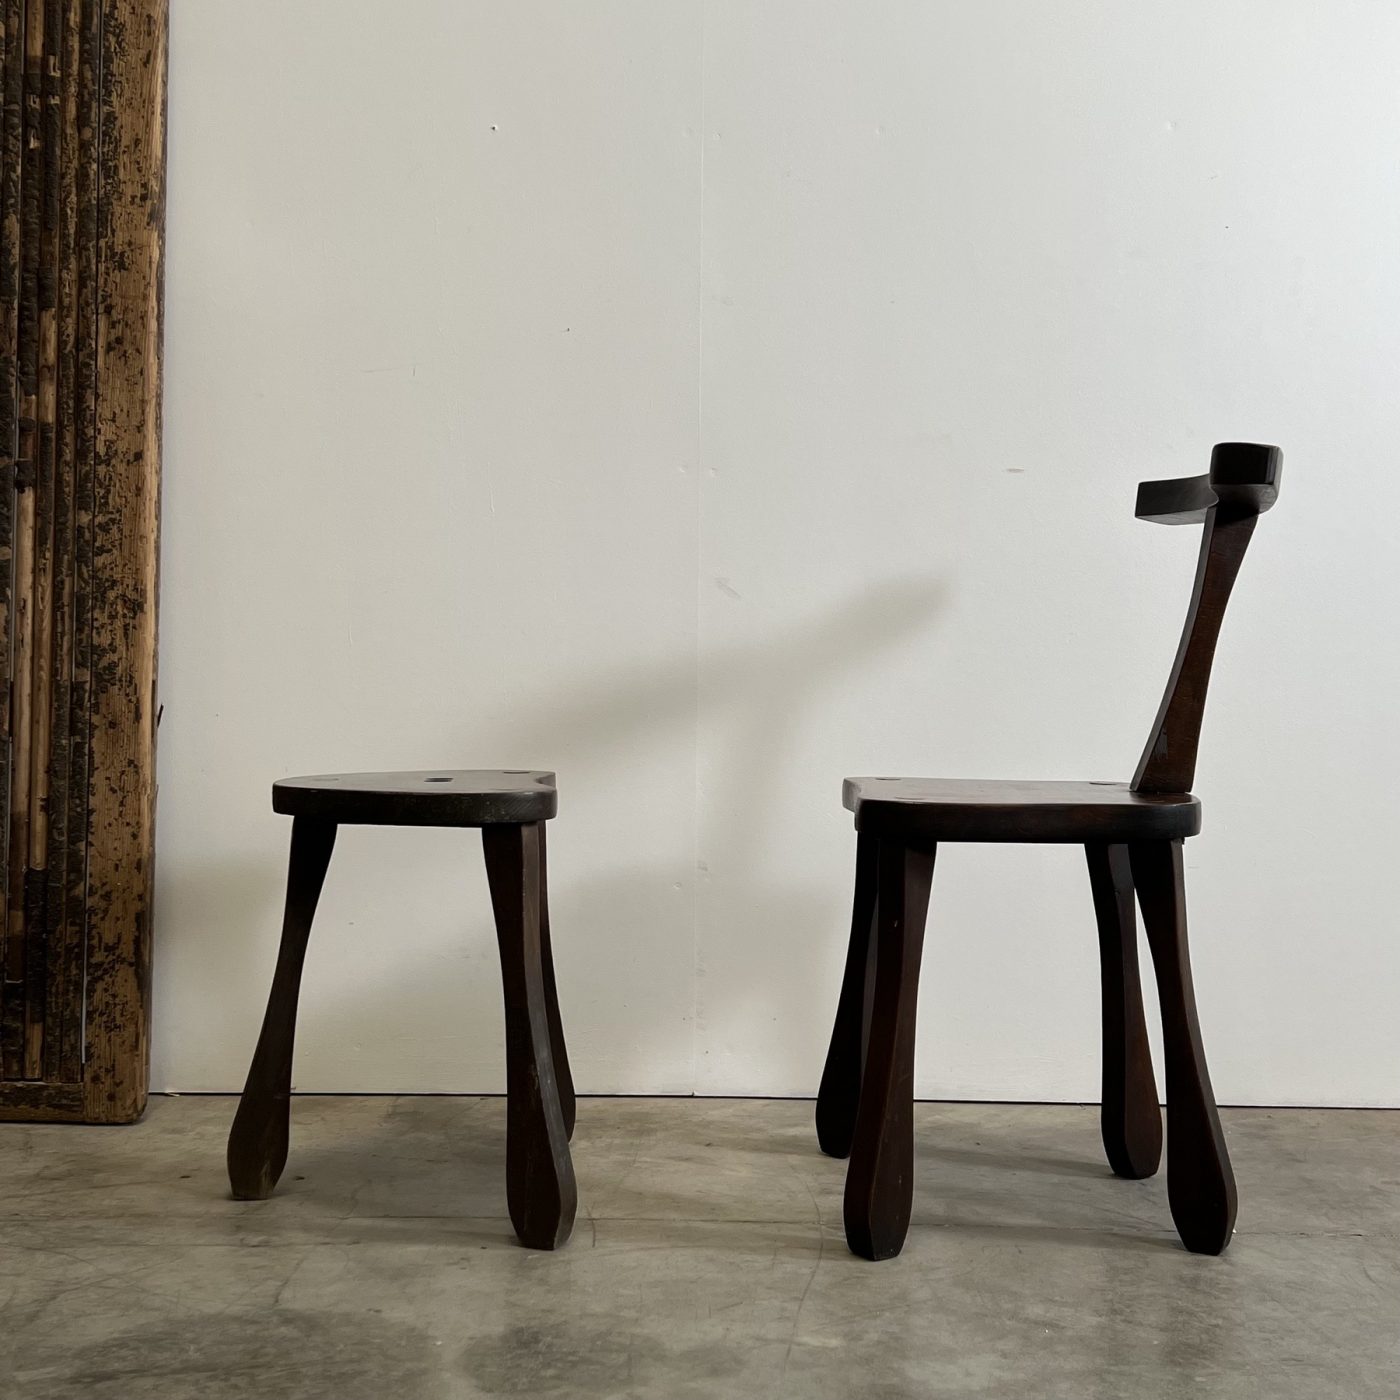 objet-vagabond-primitive-chairs0001